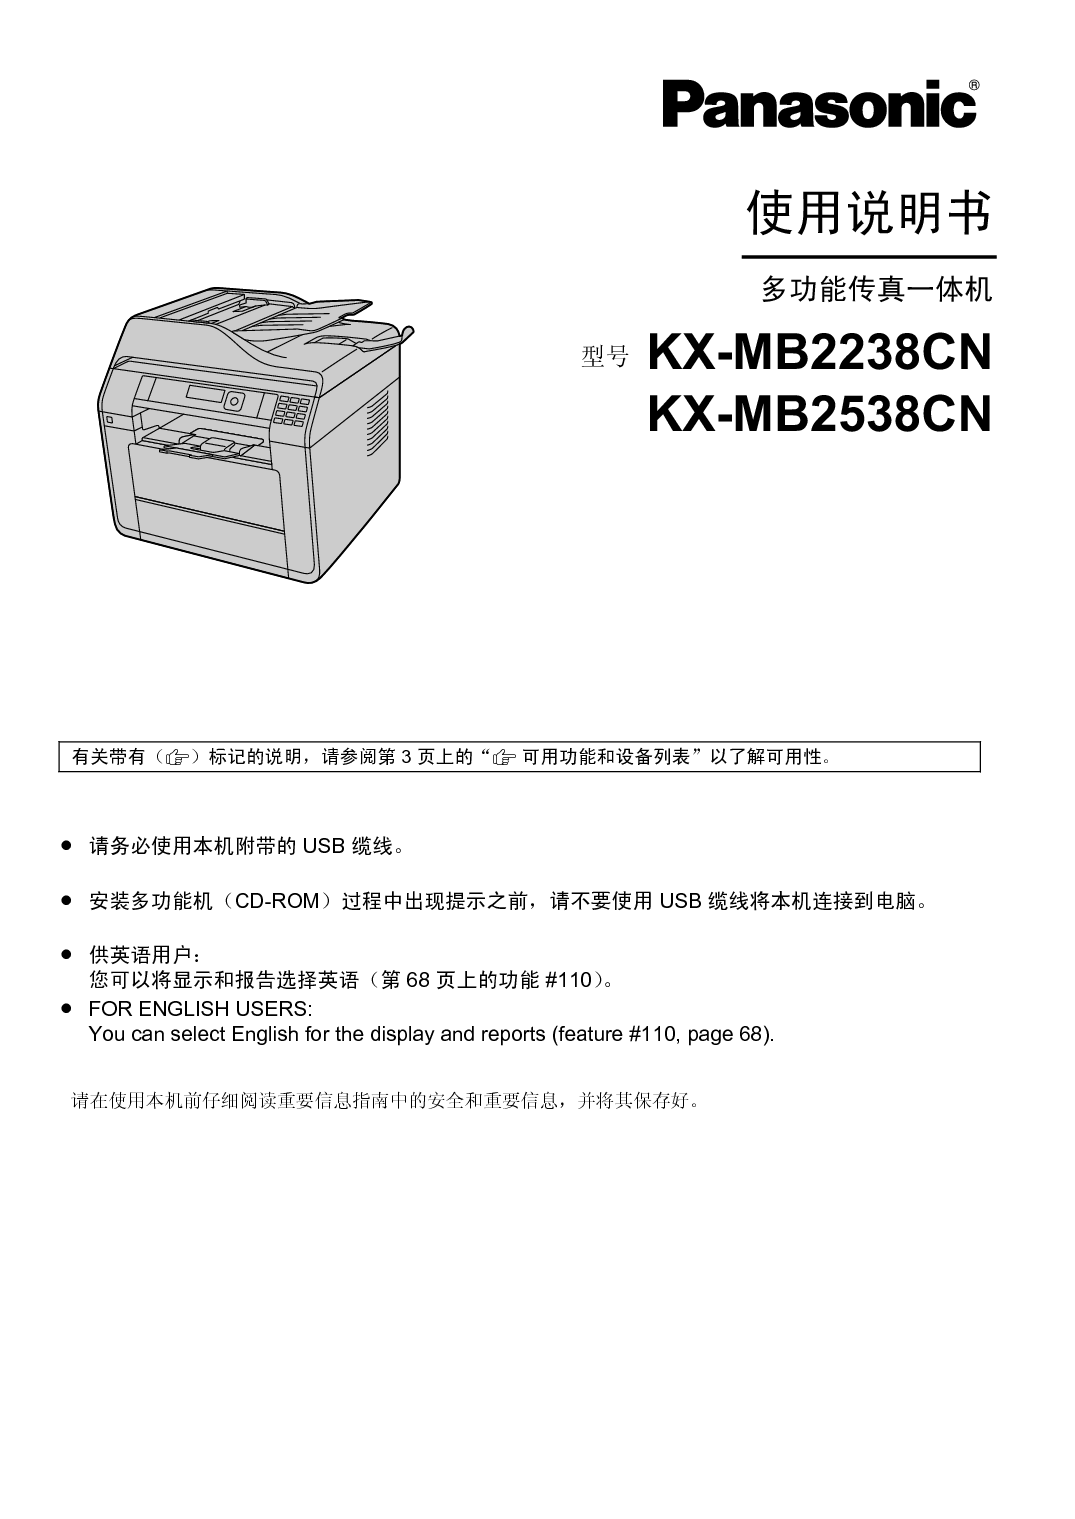 松下 Panasonic KX-MB2238CN 使用说明书 封面